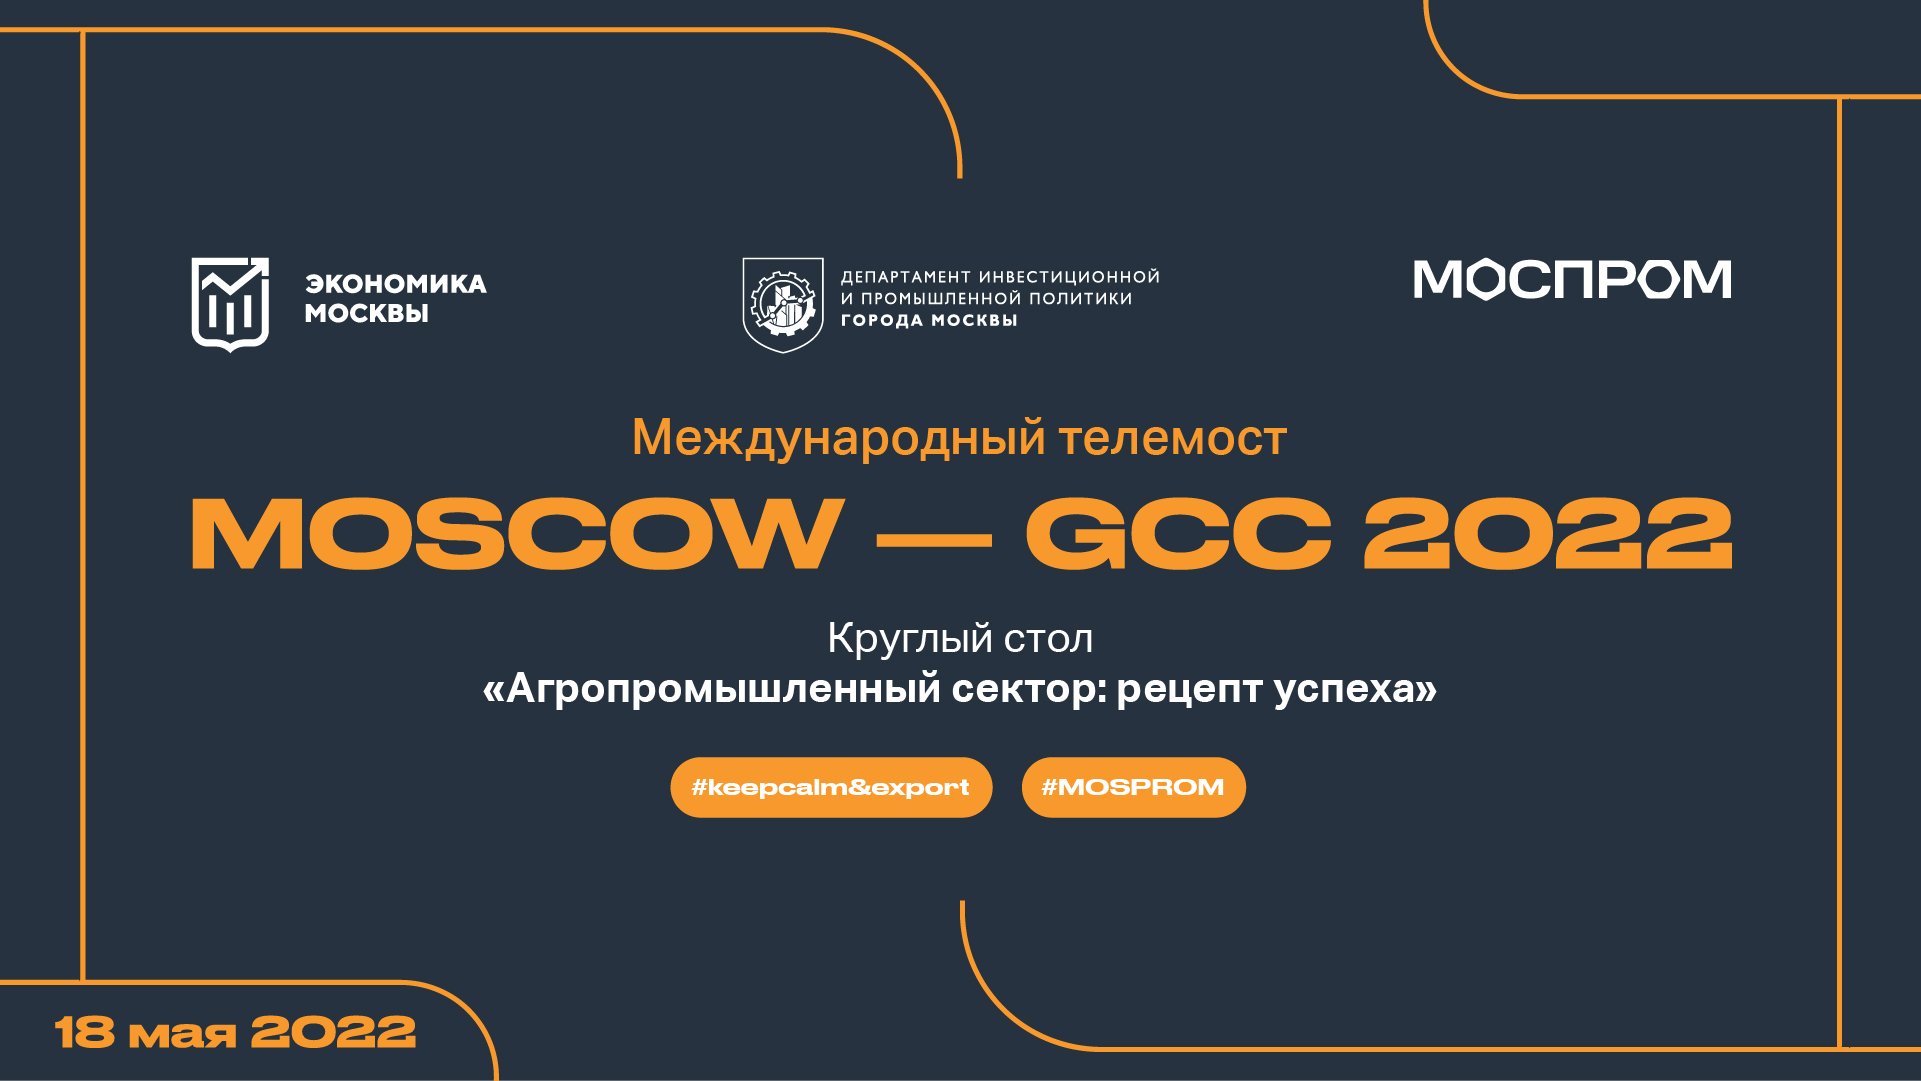 МТМ "MOSCOW - GCC 2022". "Агропромышленный сектор: секрет успеха"